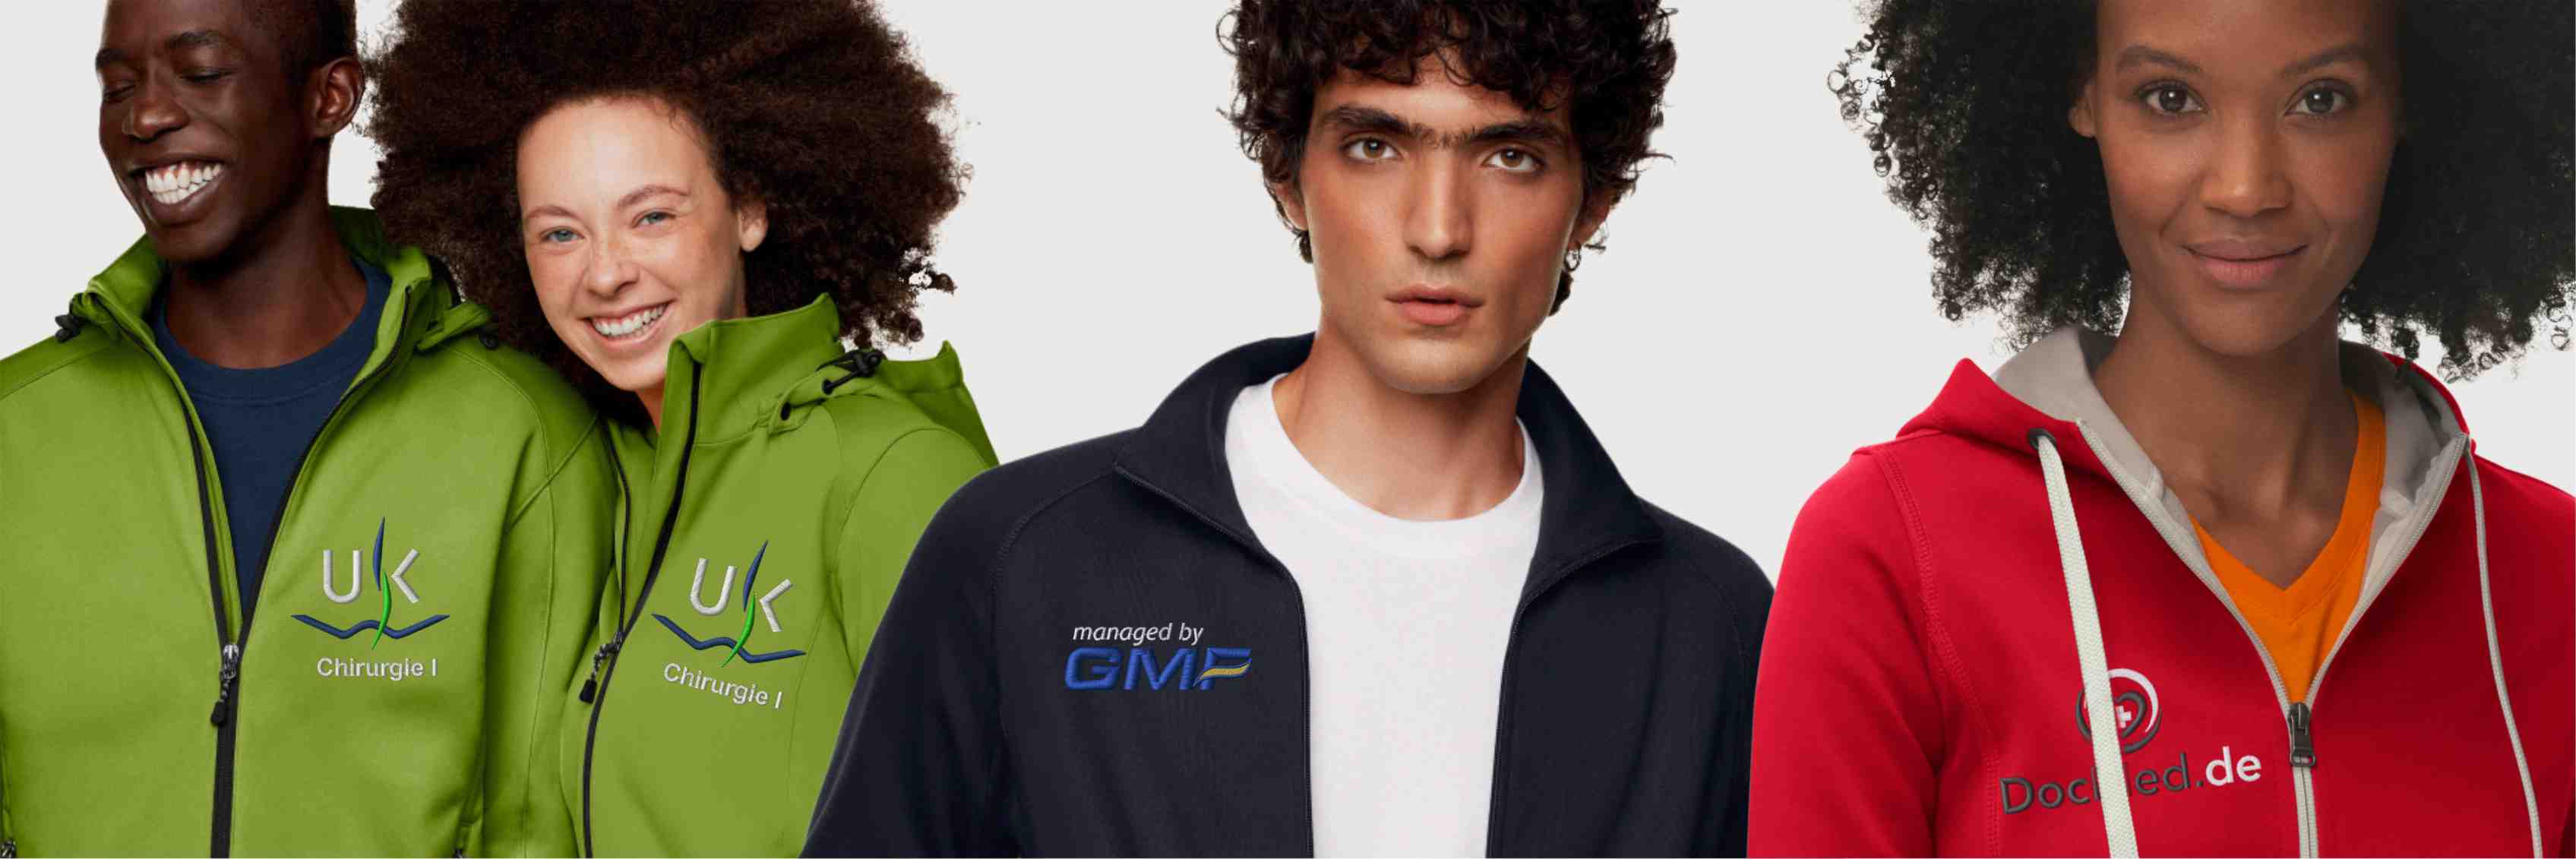 Jacken für Firmen und Vereine in vielen Farben mit Logo